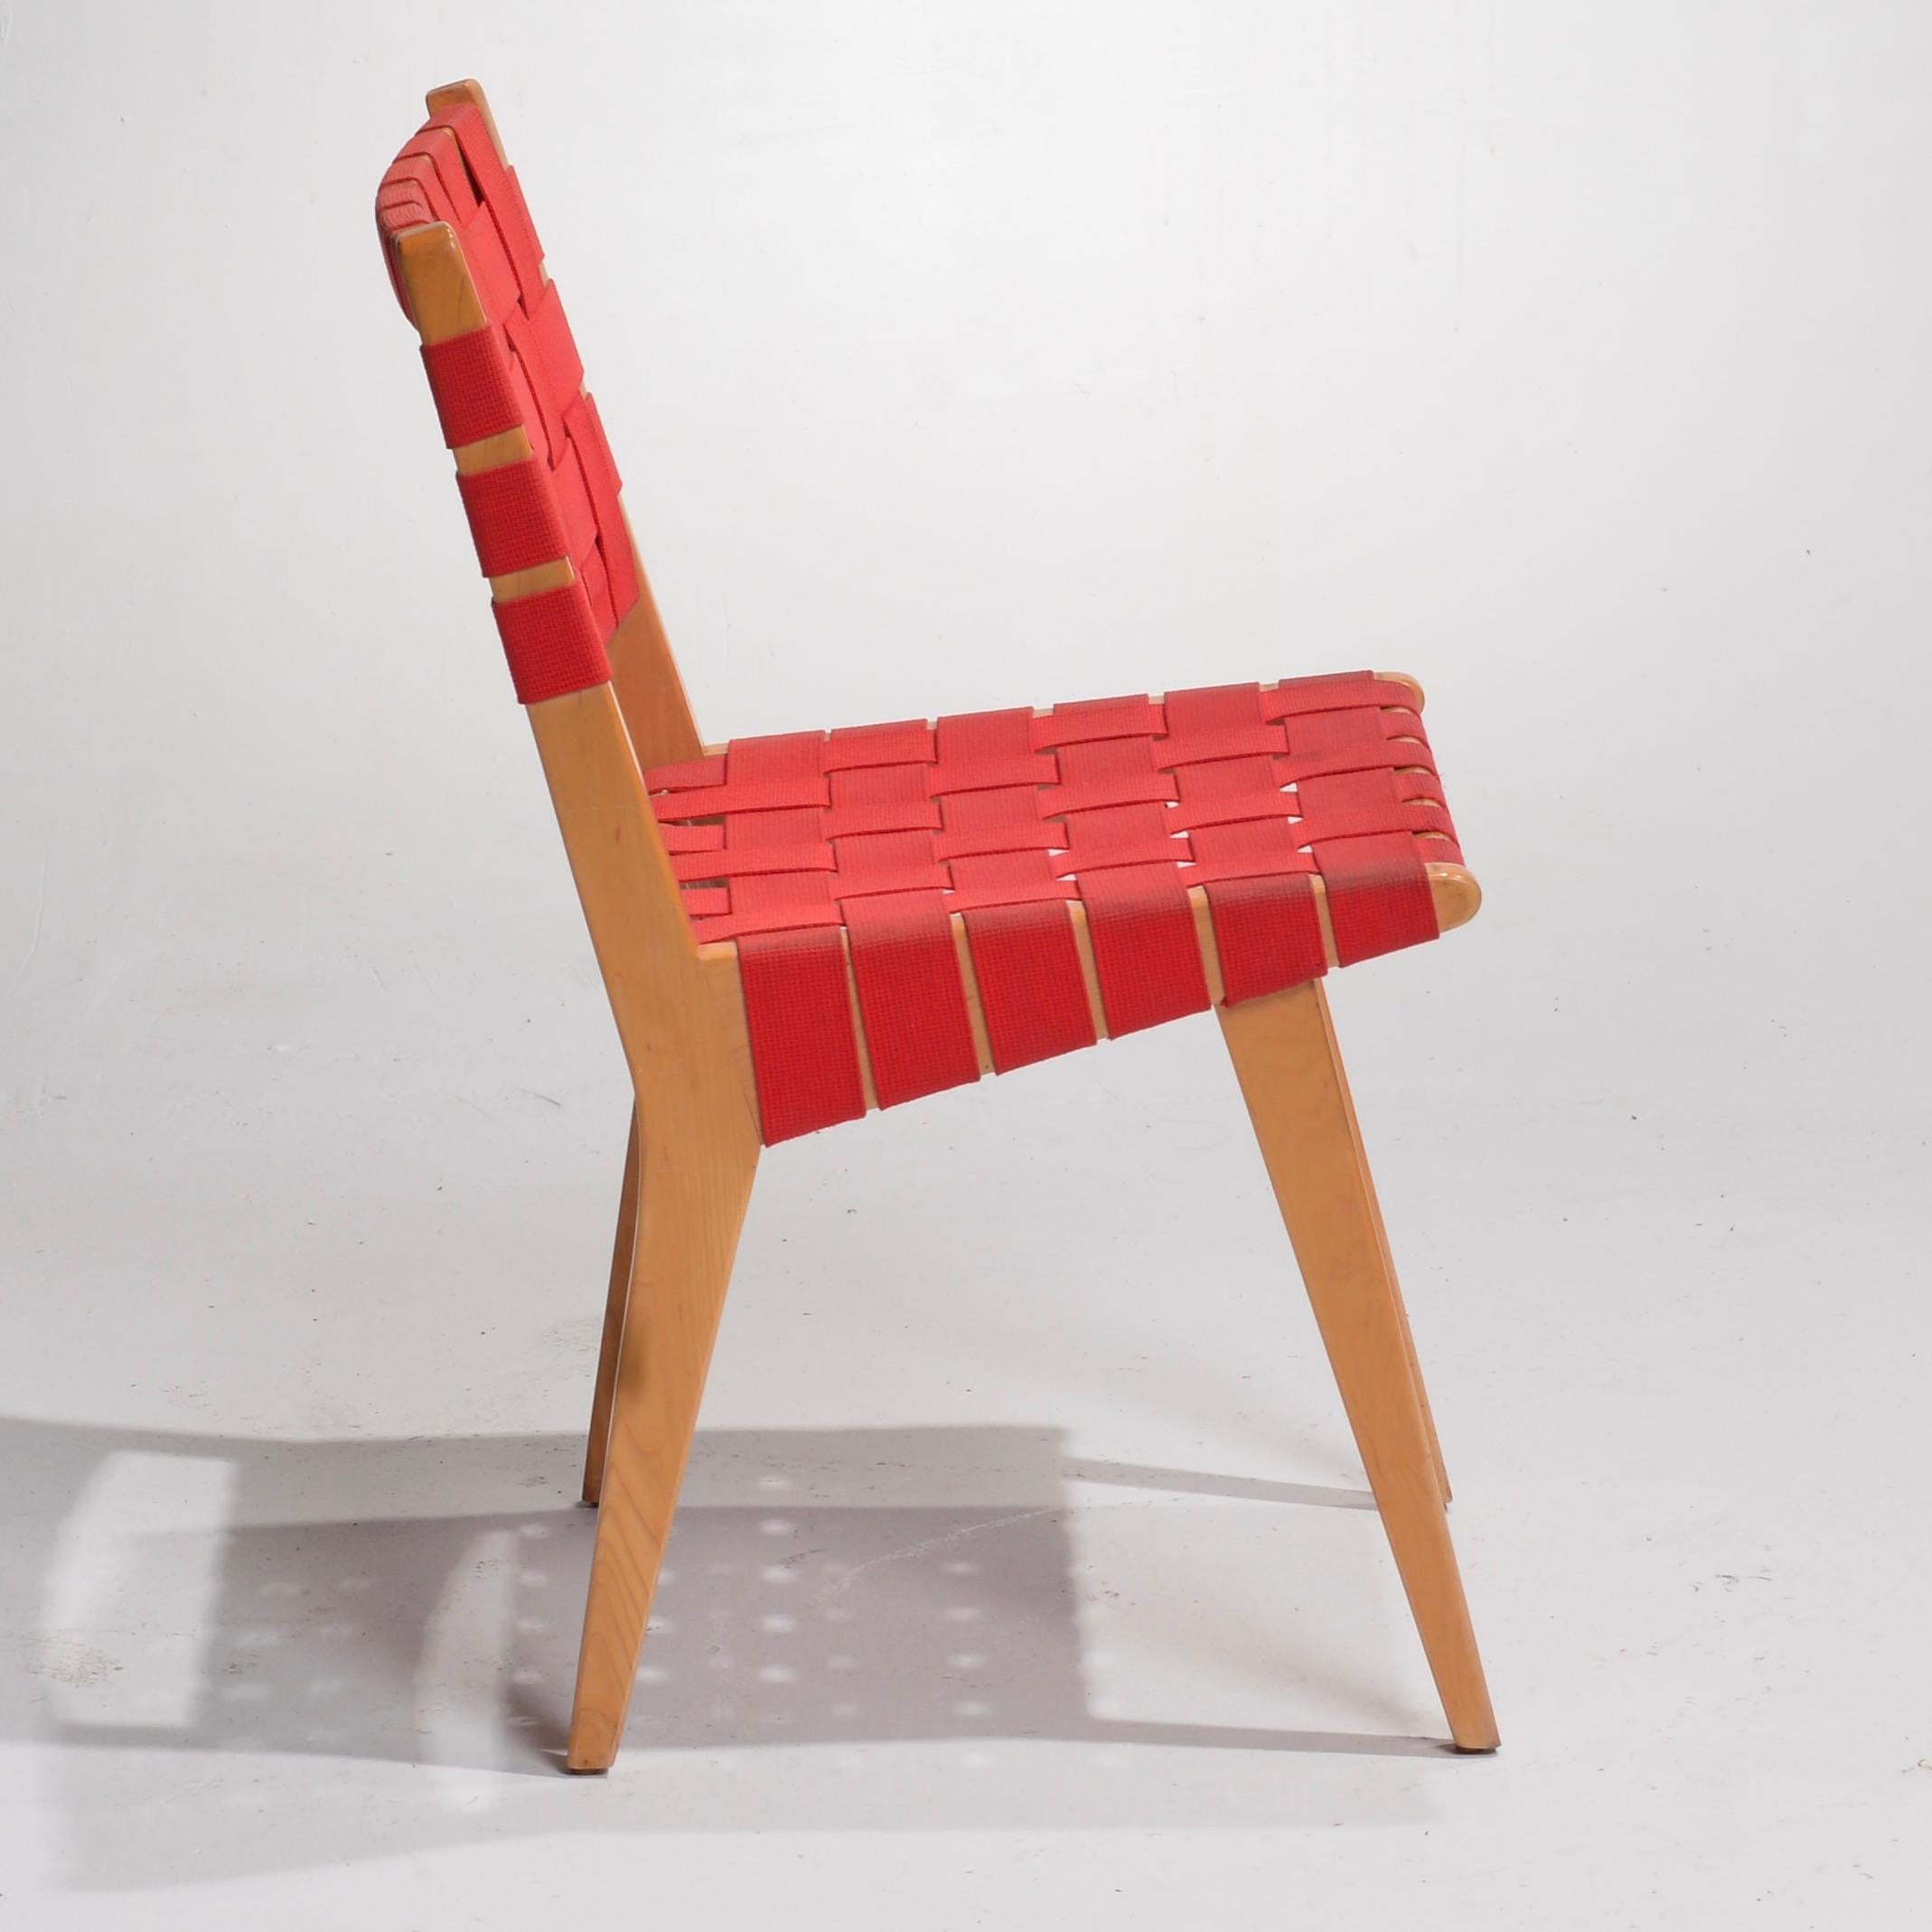 Der neue Knoll Risom Side Chair - eine zeitlose Ikone des modernen Designs!

Der Risom Side Chair von Knoll ist ein echtes Zeugnis für das bleibende Erbe des modernen Möbeldesigns. Dieser ikonische Stuhl wurde von dem dänischen Designer Jens Risom